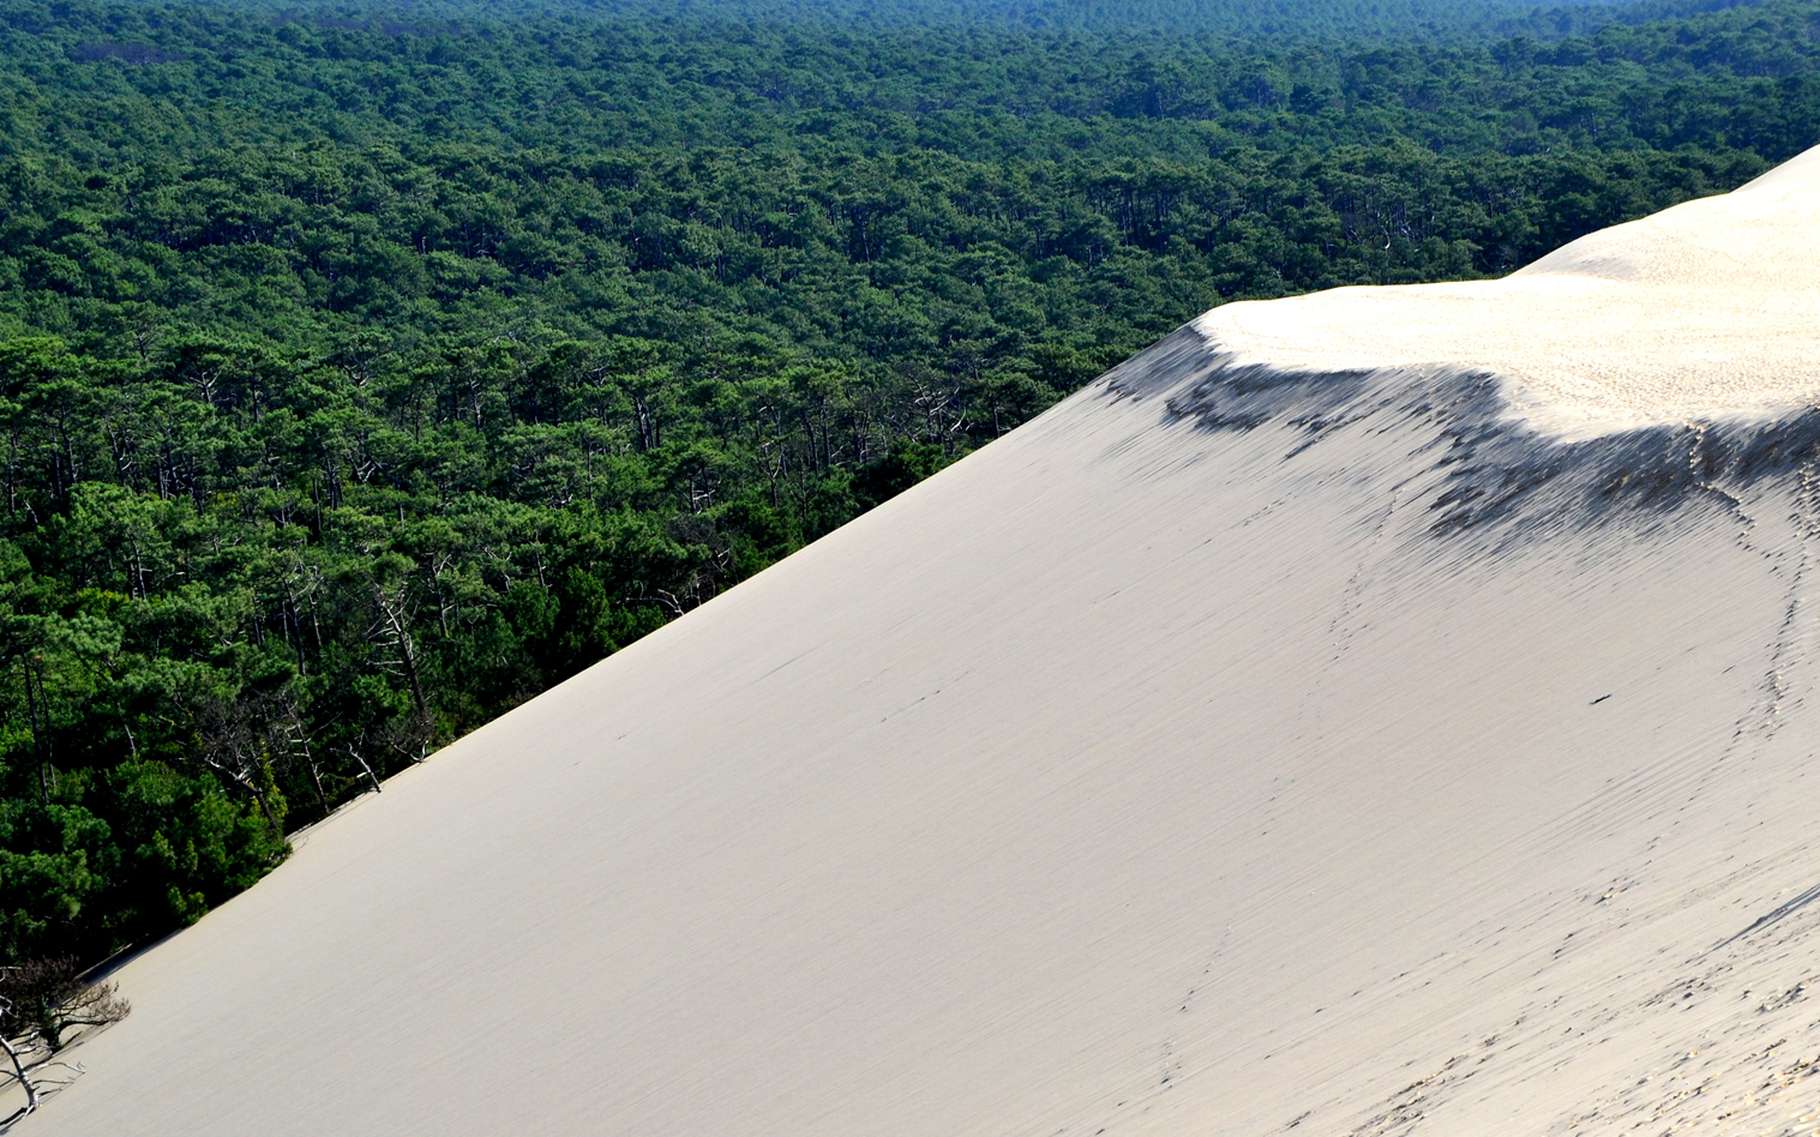 La dune du Pyla, édifice de sable, est la plus connue des attractions autour du bassin d'Arcachon. © DR